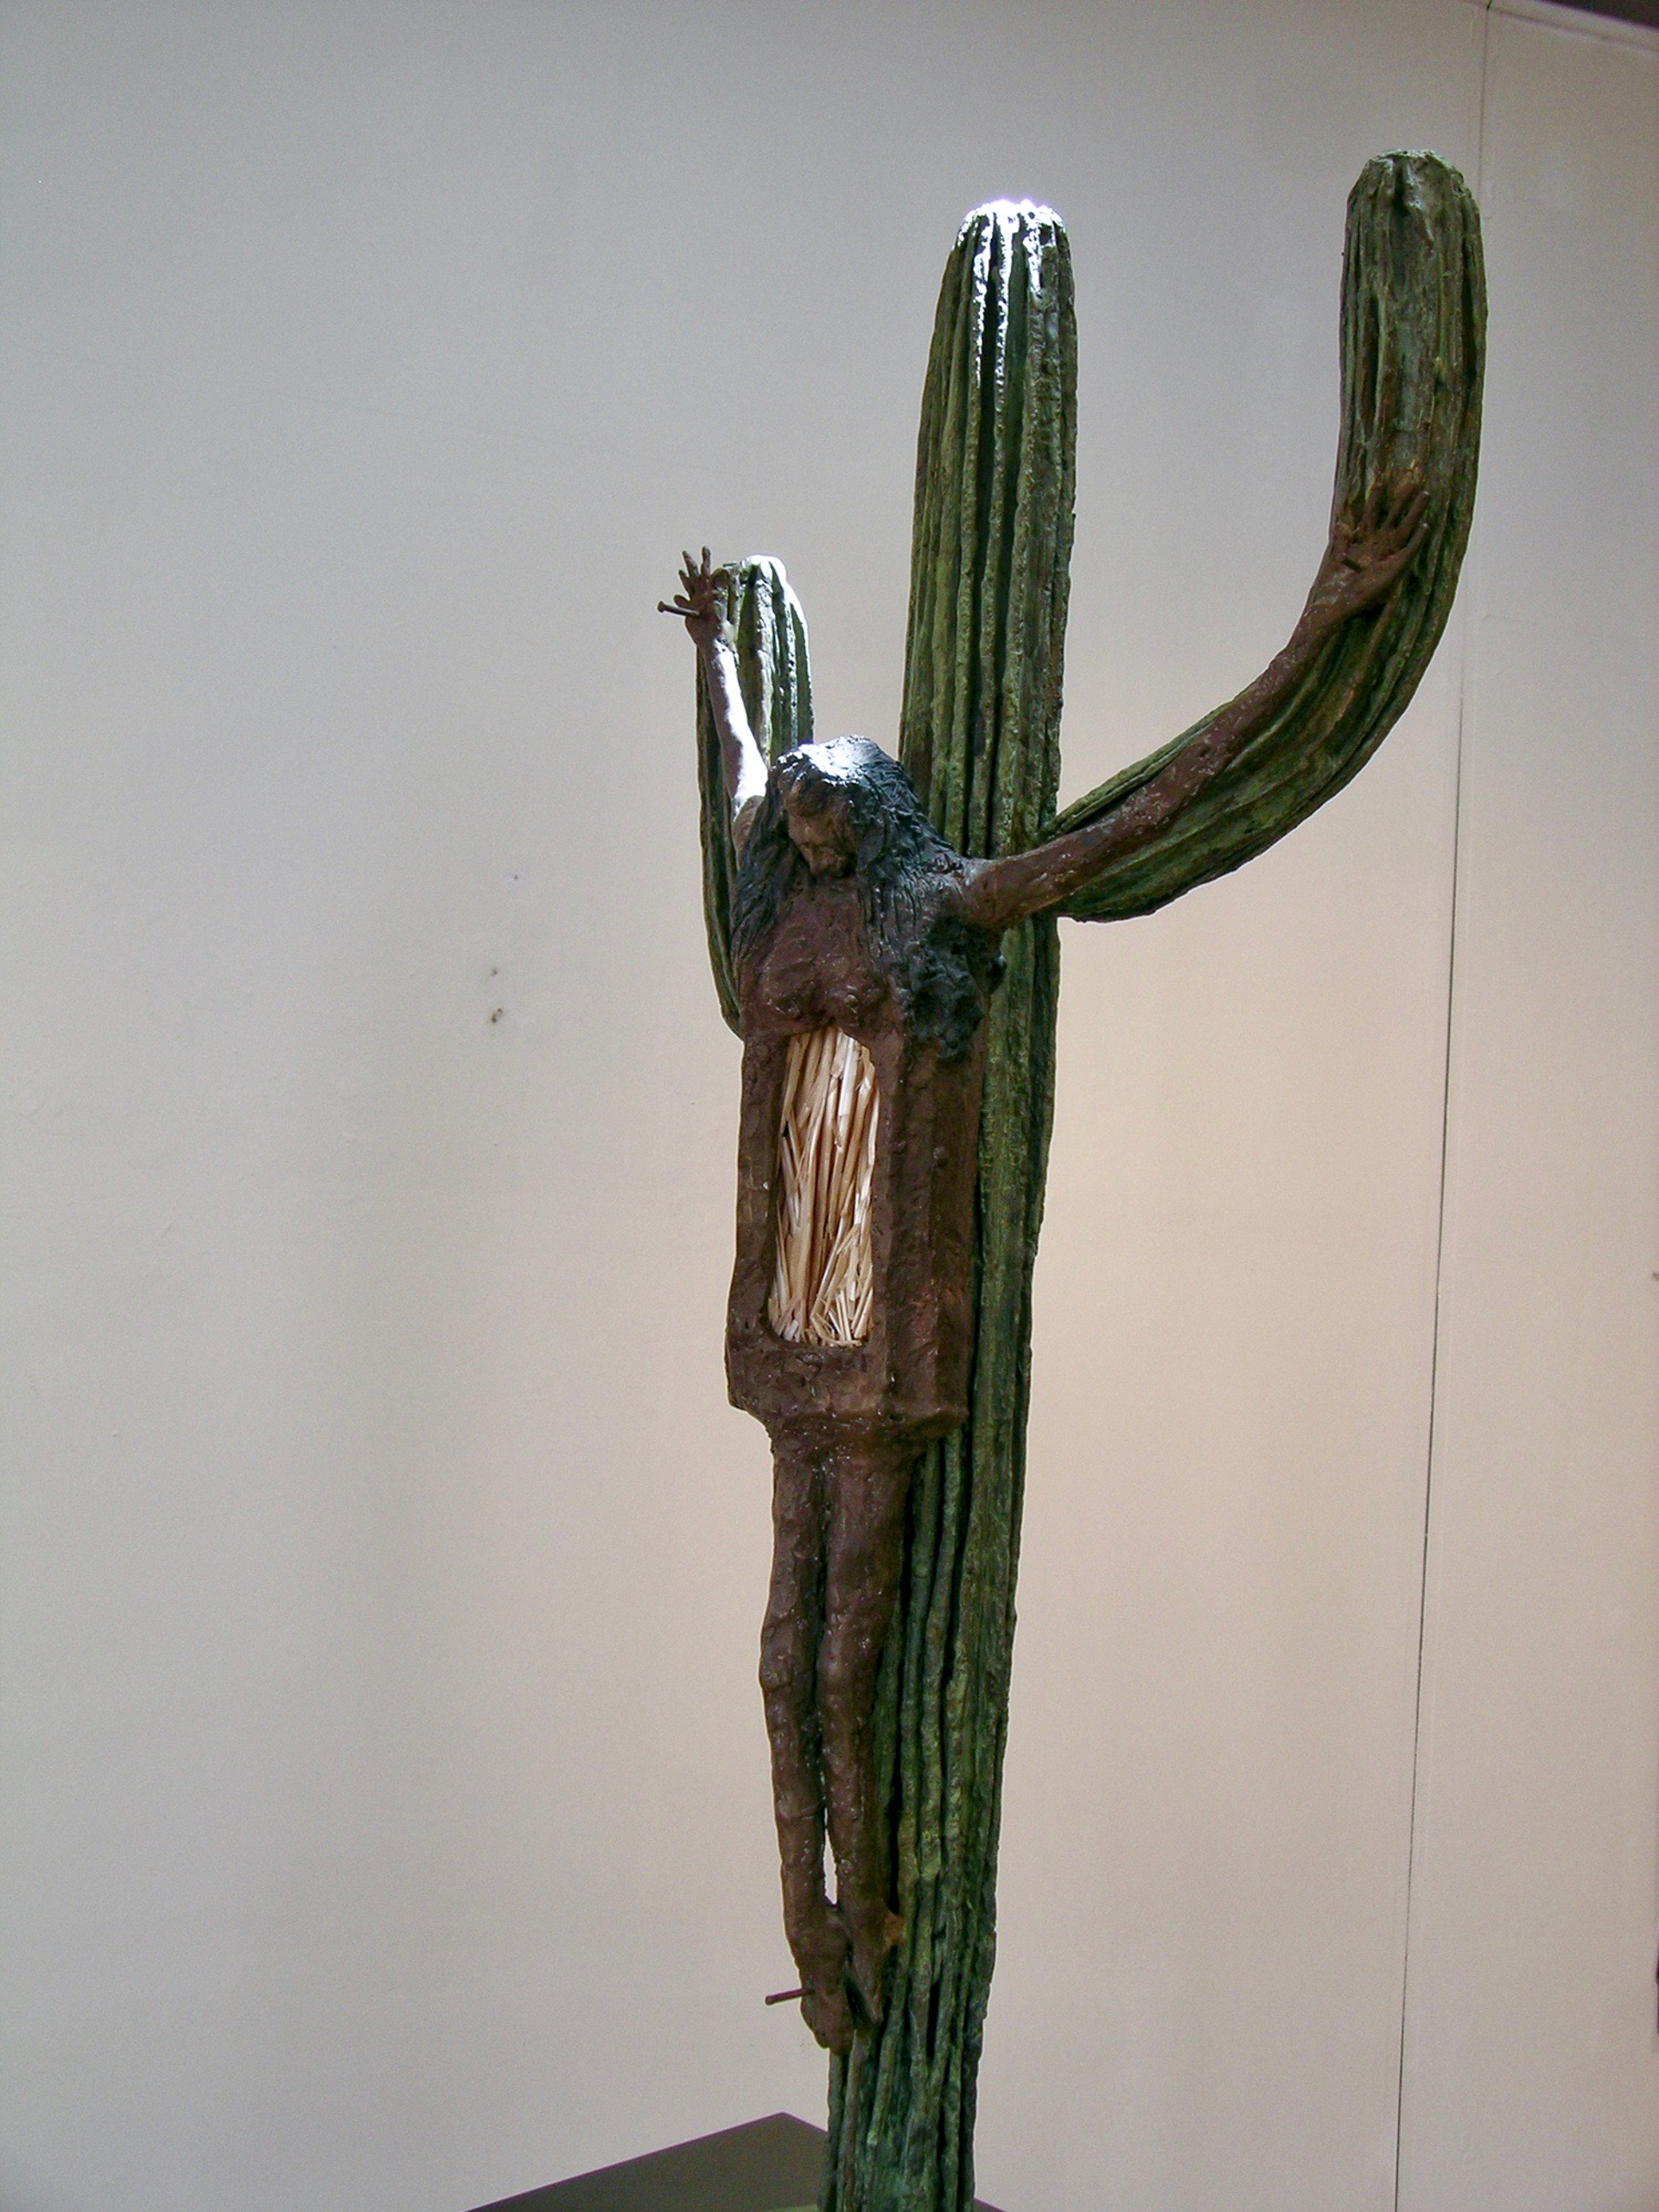 The Crucifixion of Tita (La Crucificion de Tita) by Eduardo Oropeza